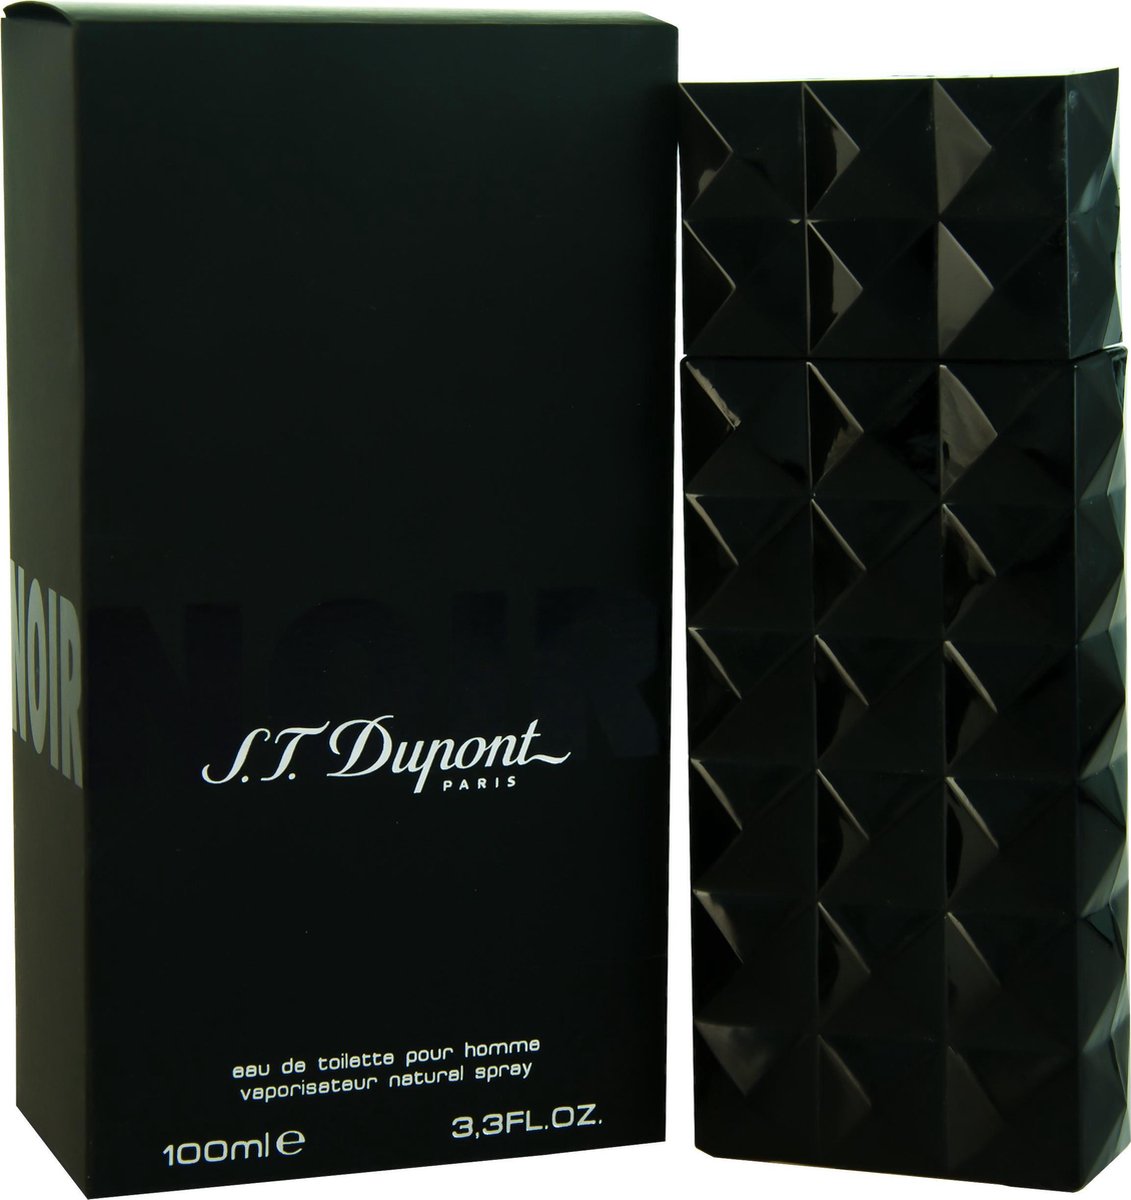 Dupont Noir pour homme - 100ml - eau de toilette